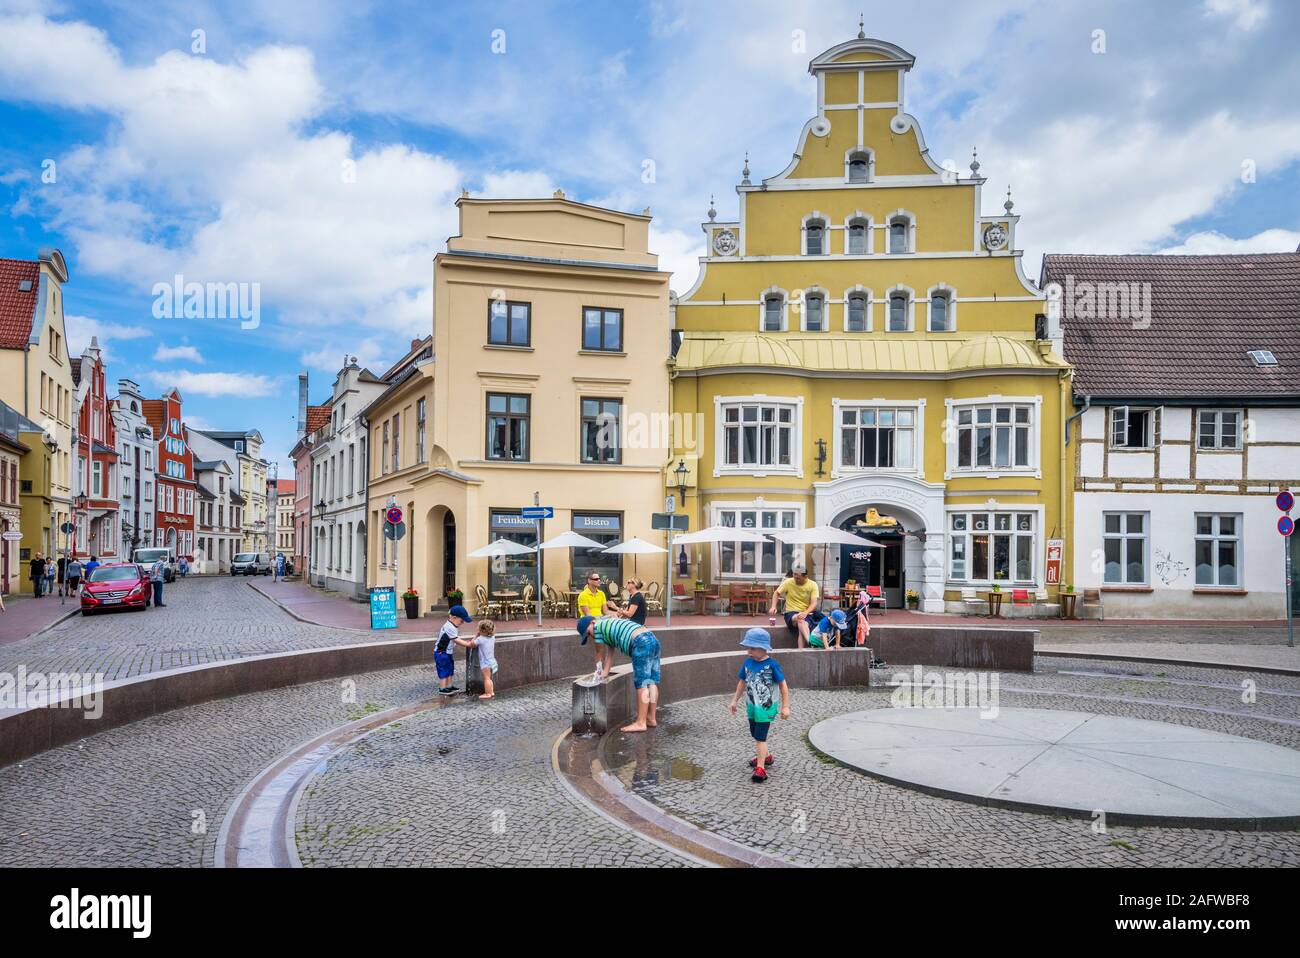 Fontana nel centro storico della città anseatica di Wismar, Meclenburgo-Pomerania Occidentale, Germania Foto Stock